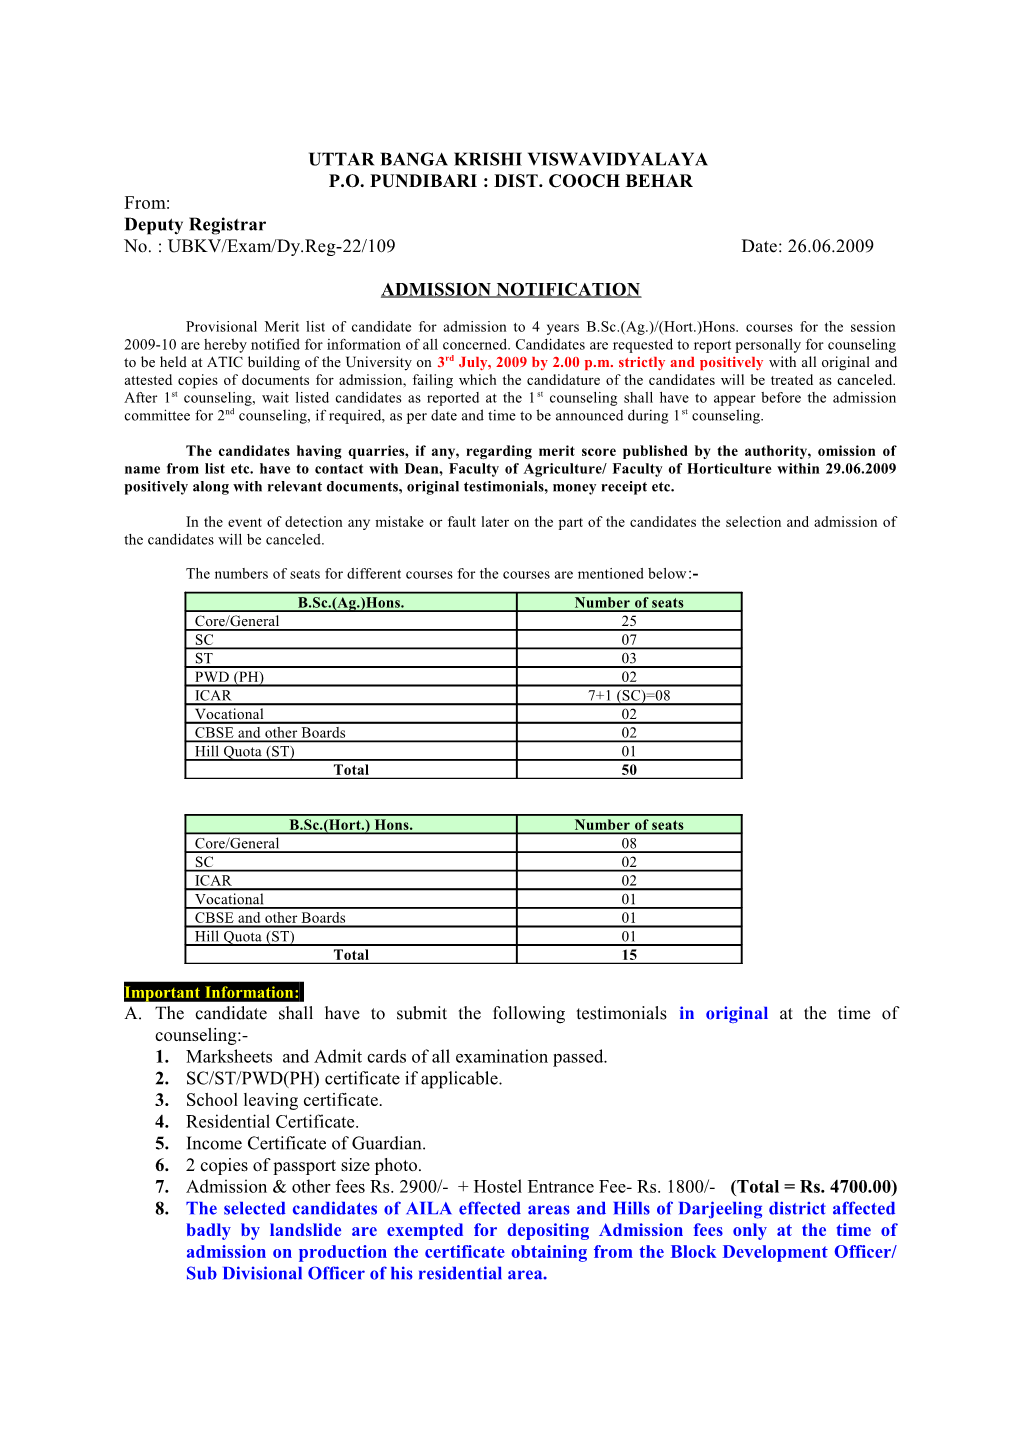 Merit List for Admission to B. Sc. (Ag.) Hons. 2009-10